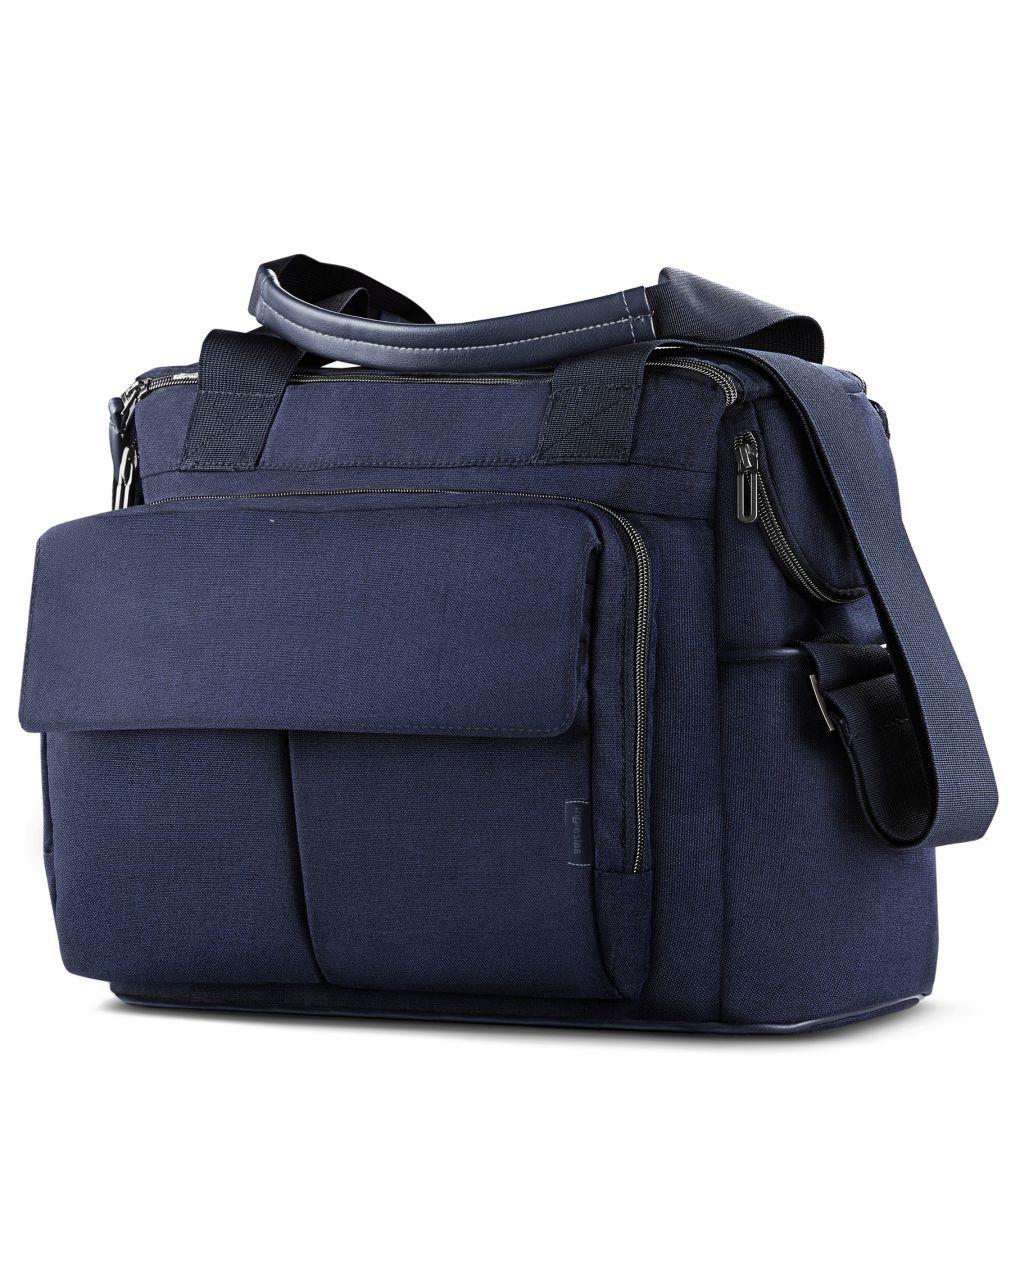 Borsa dual bag aptica portland blue - Inglesina